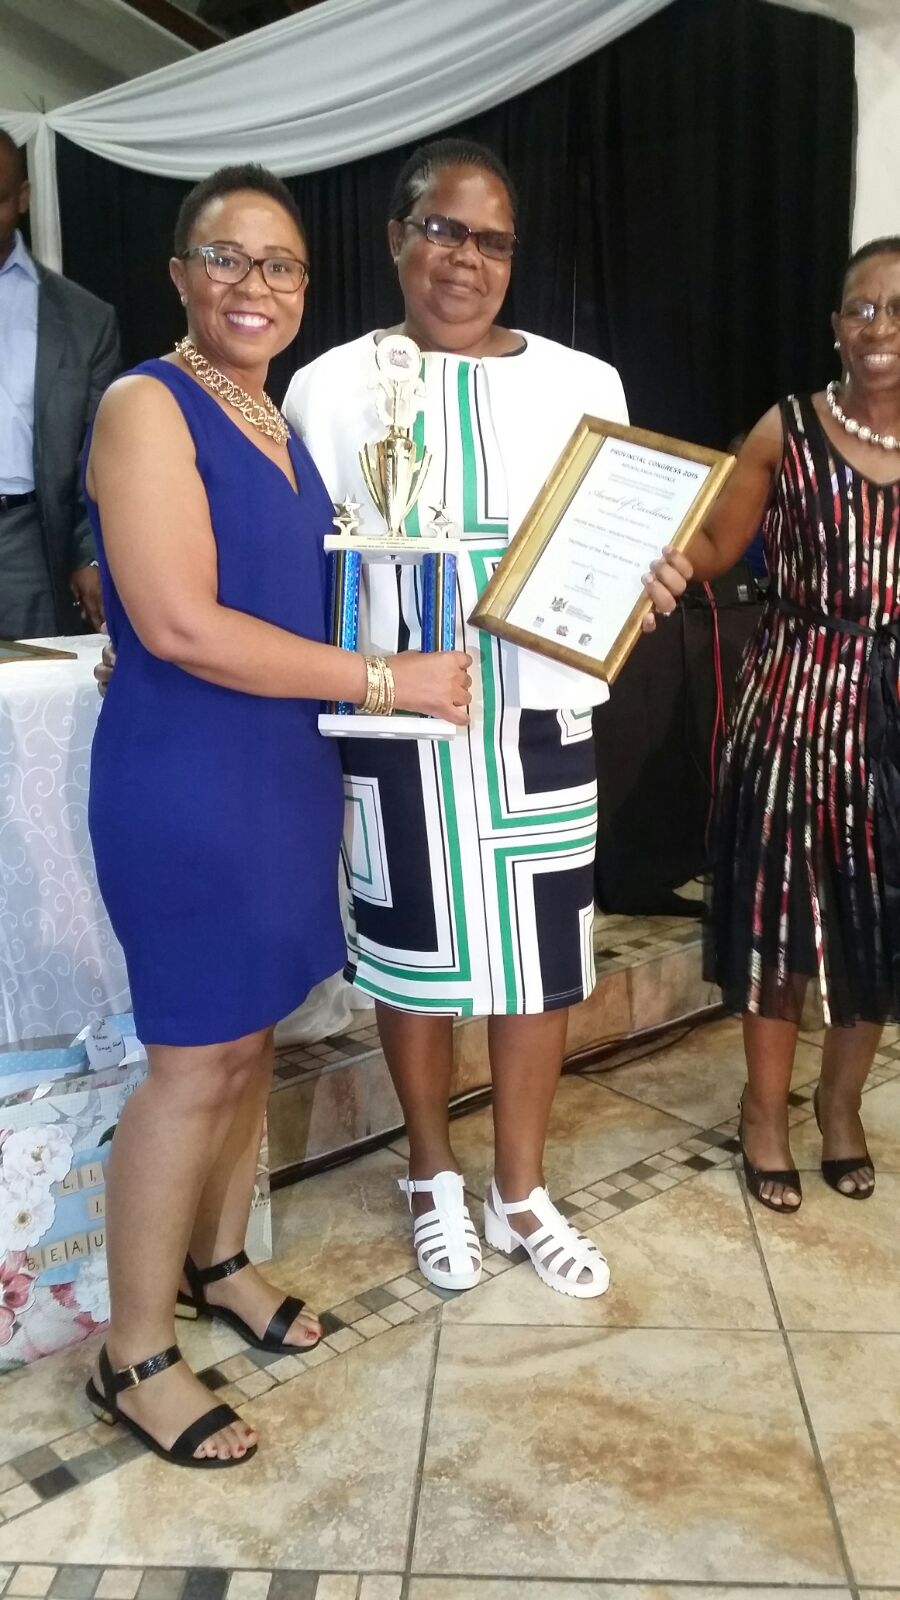 Senior Manager Pulane handing over awards